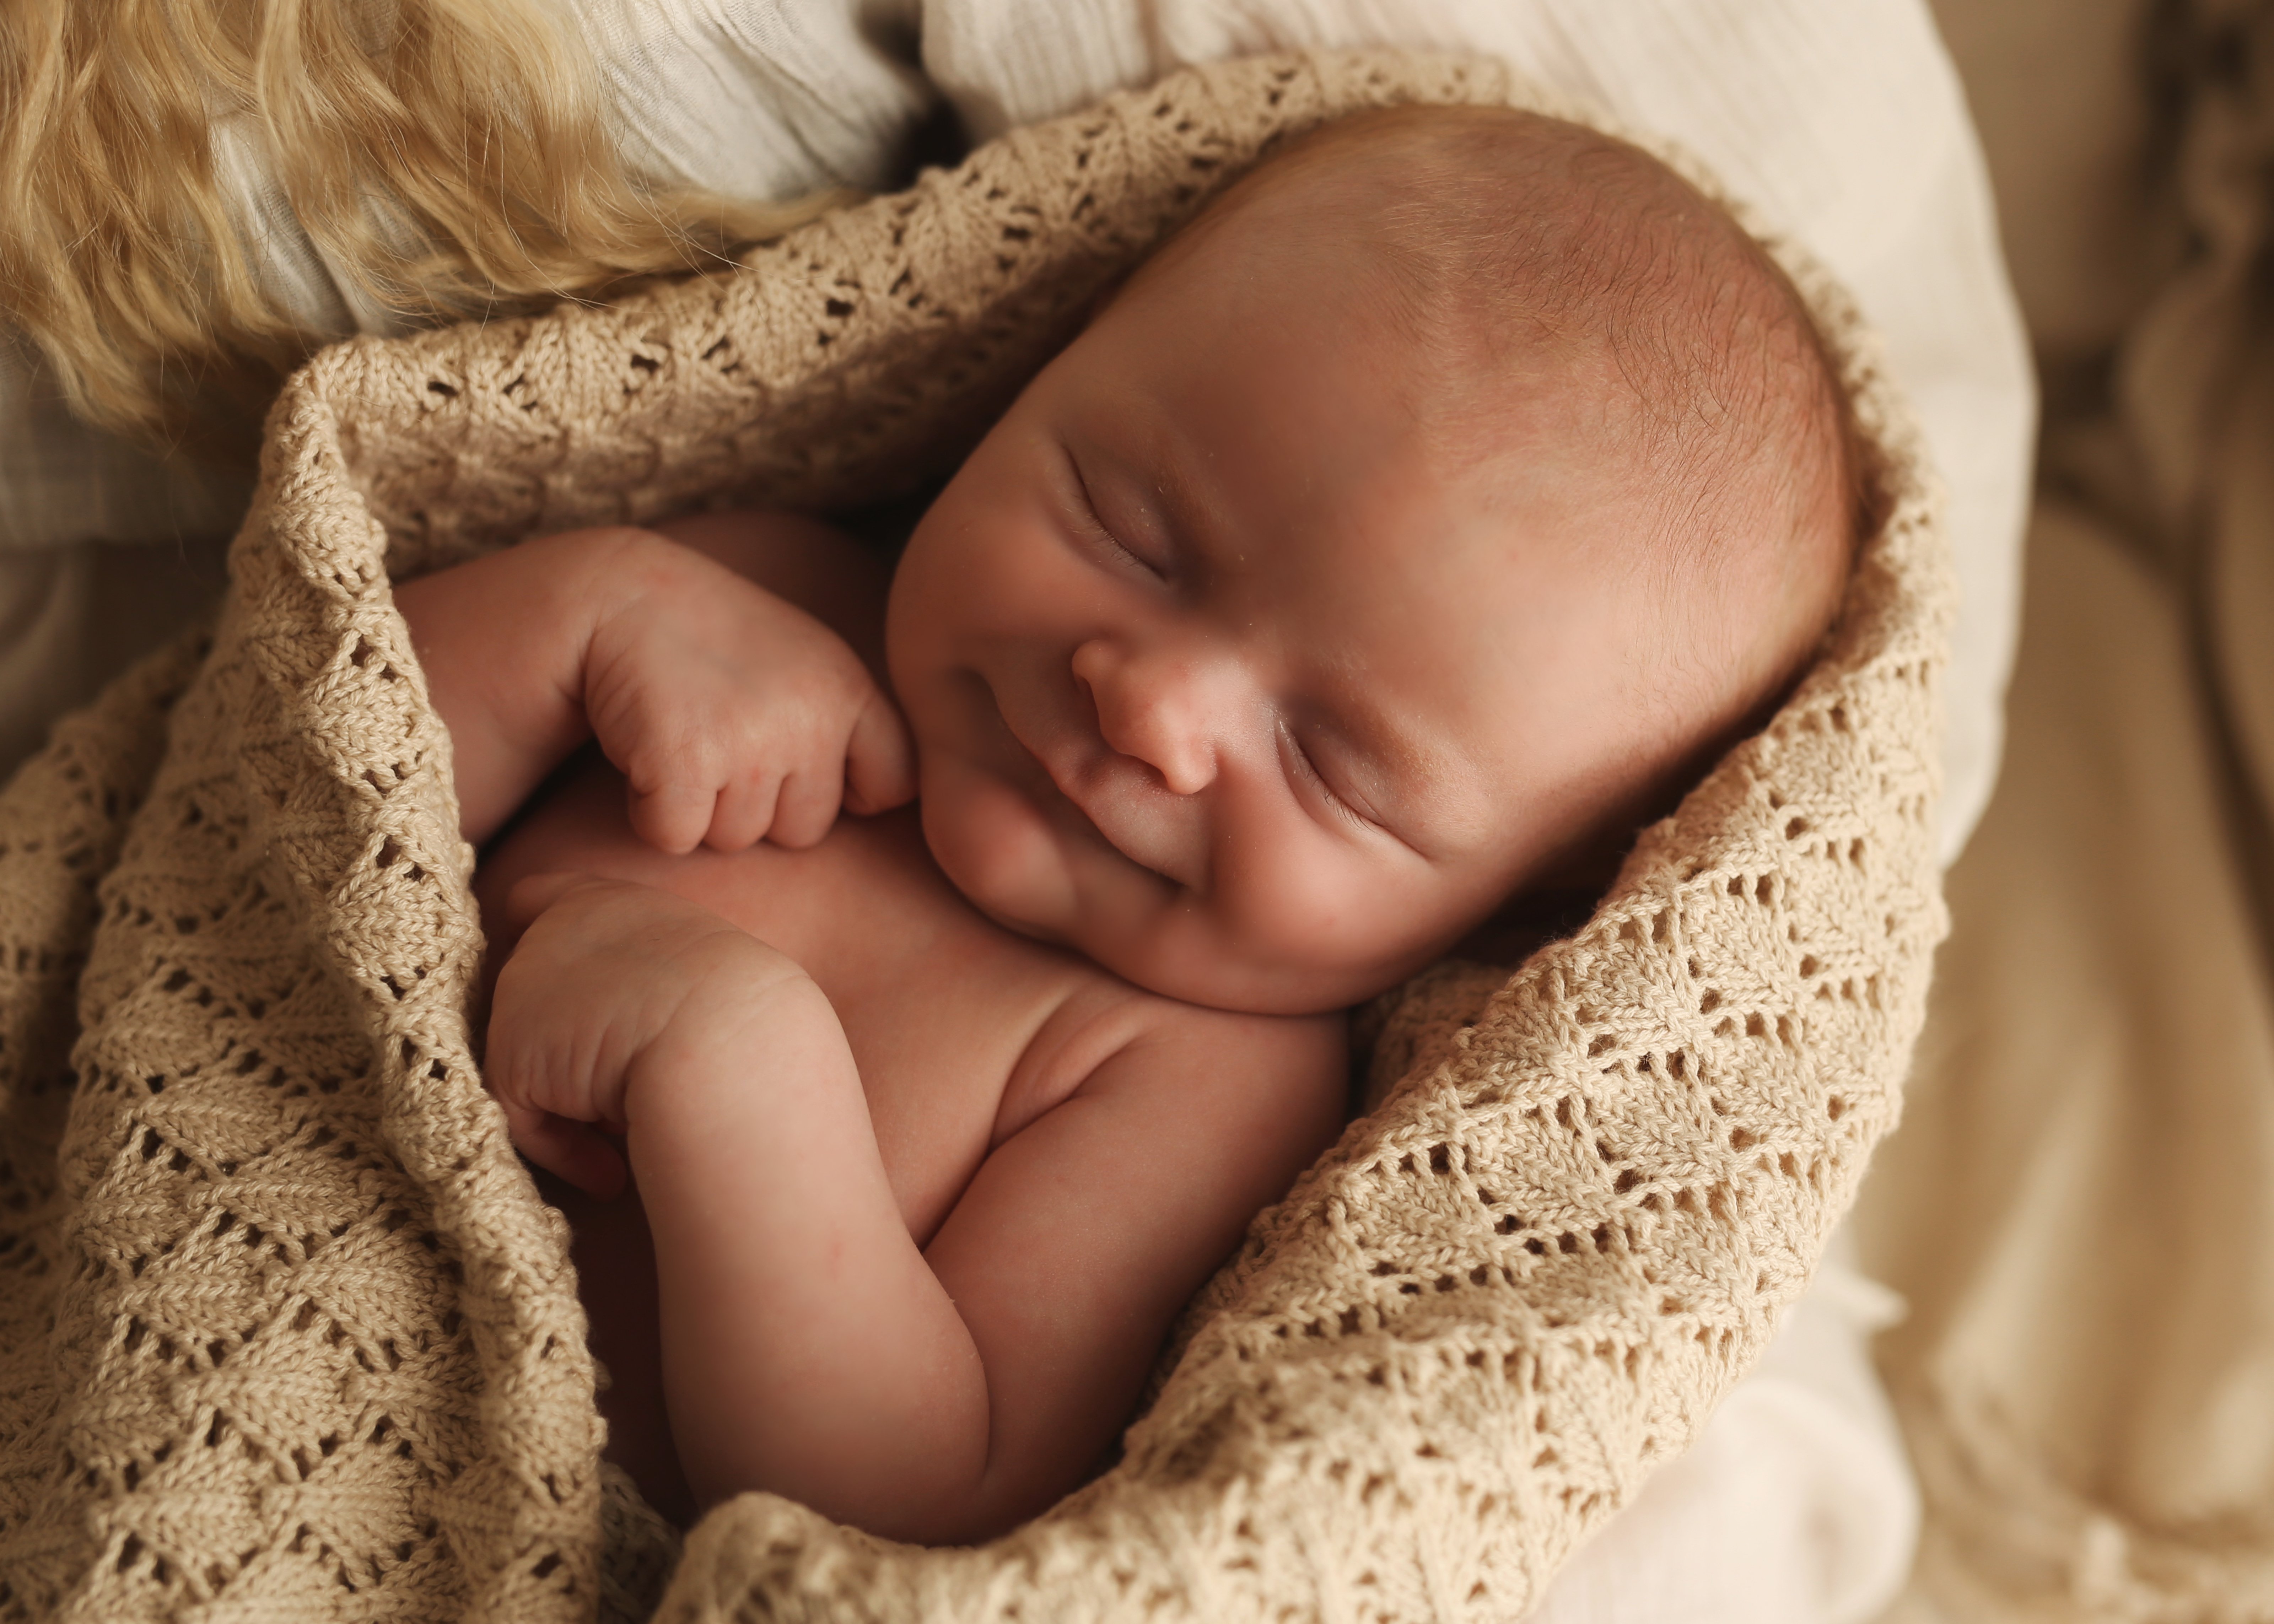 advocaat transmissie Meer Speciale i fotografering af nyfødte, gravide, baby og familier.